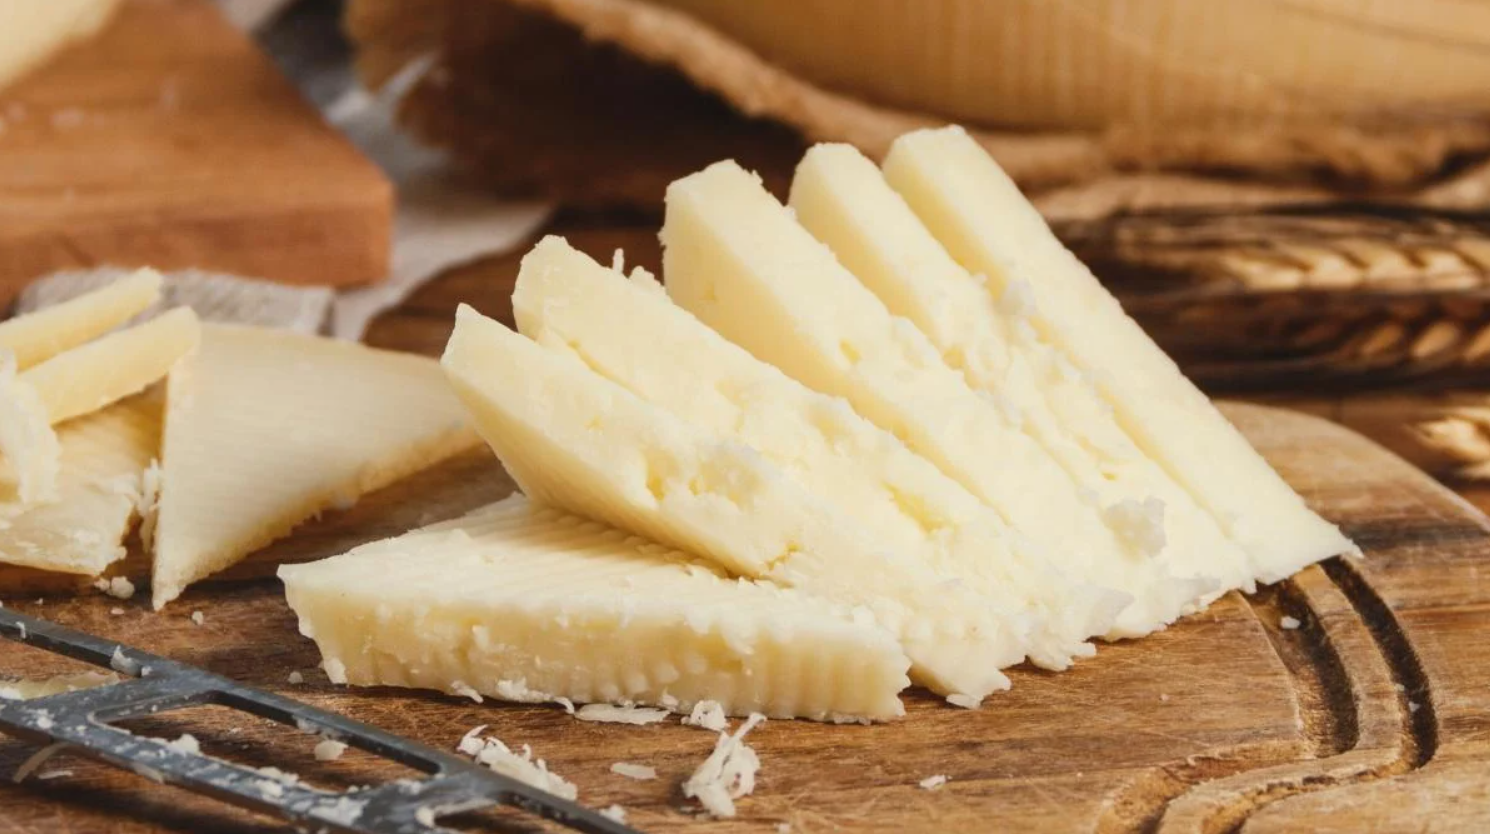 Homemade hard cheese